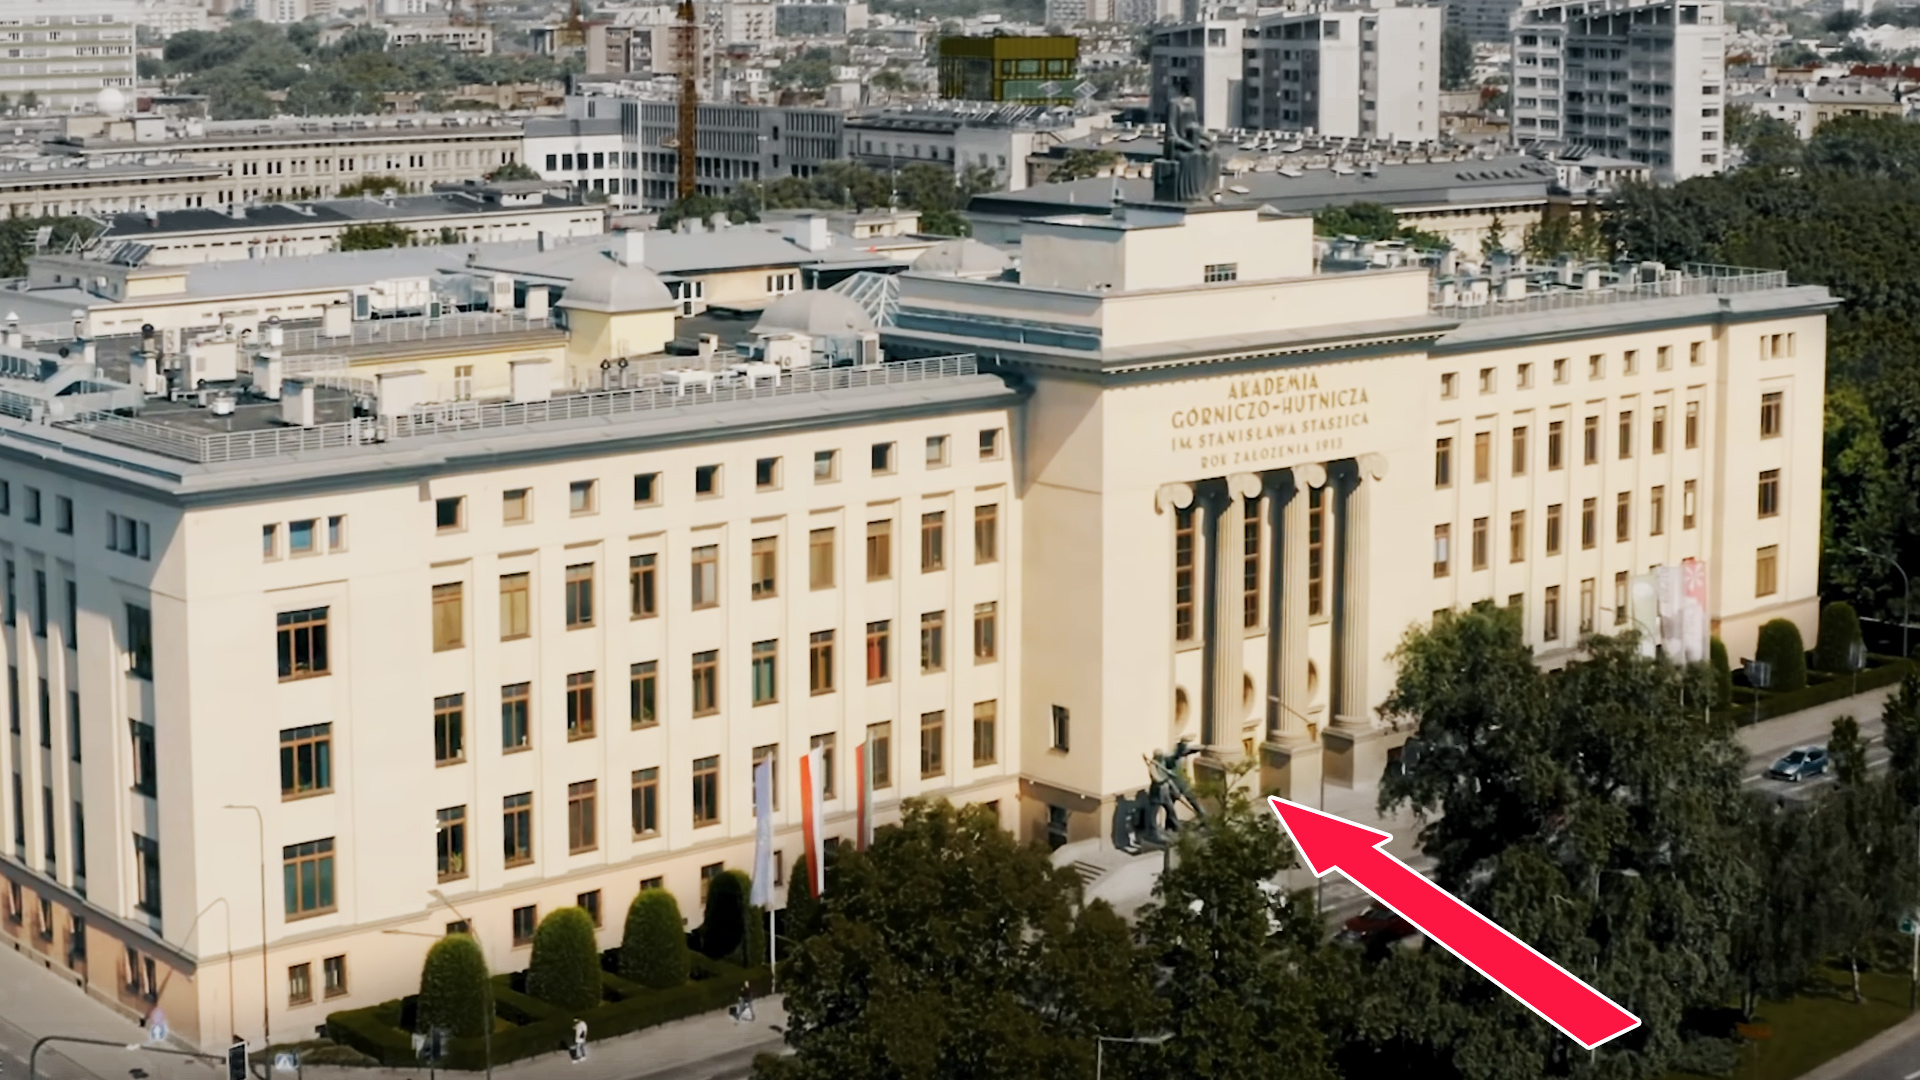 Zdjęcie z lotu ptaka przedniej elewacji budynku uczelni. Przed środkową częścią budynku umieszczono dużą czerwoną strzałkę wskazująca wejście.